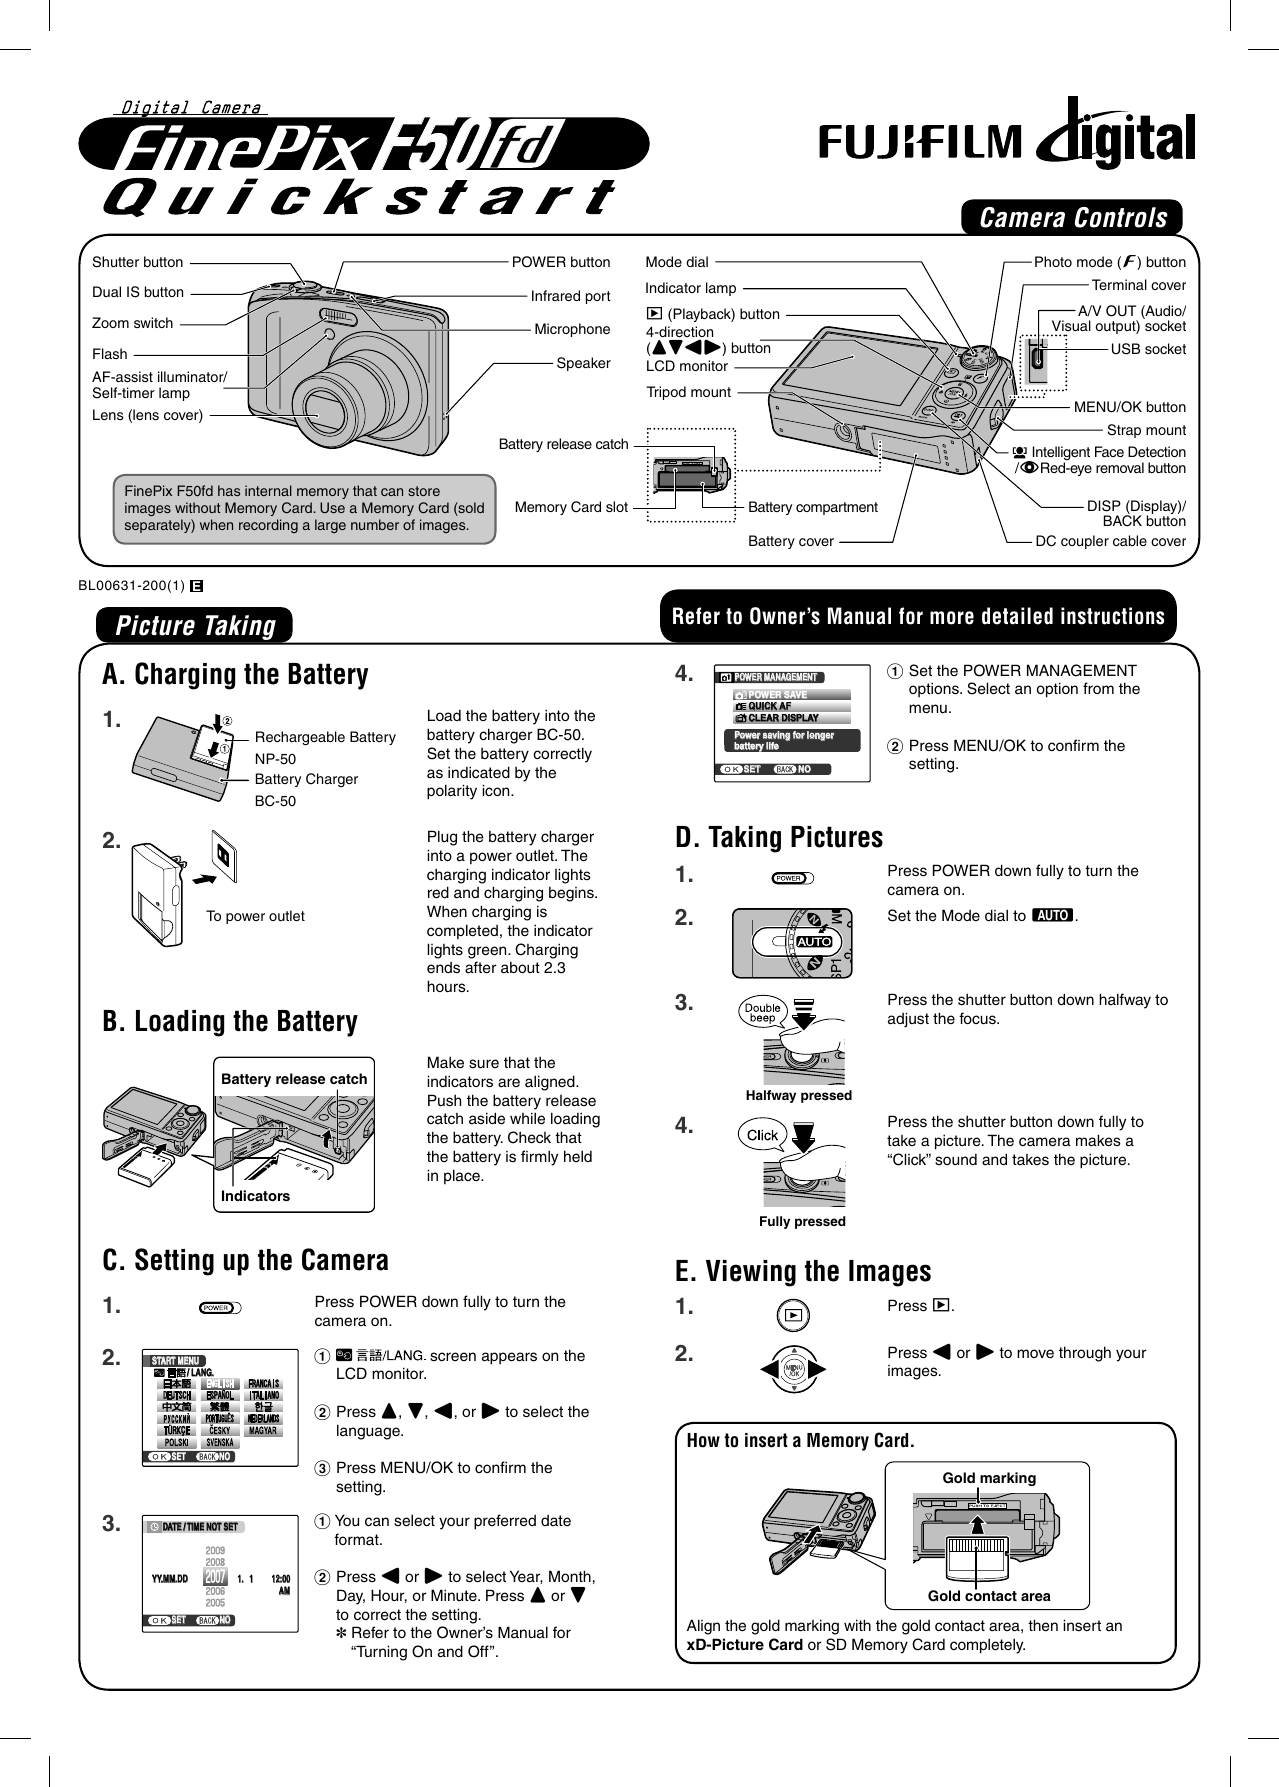 Page 1 of 2 - Fujifilm Fujifilm-Finepix-F50-Users-Manual- FinePix F50fd Quickstart  Fujifilm-finepix-f50-users-manual